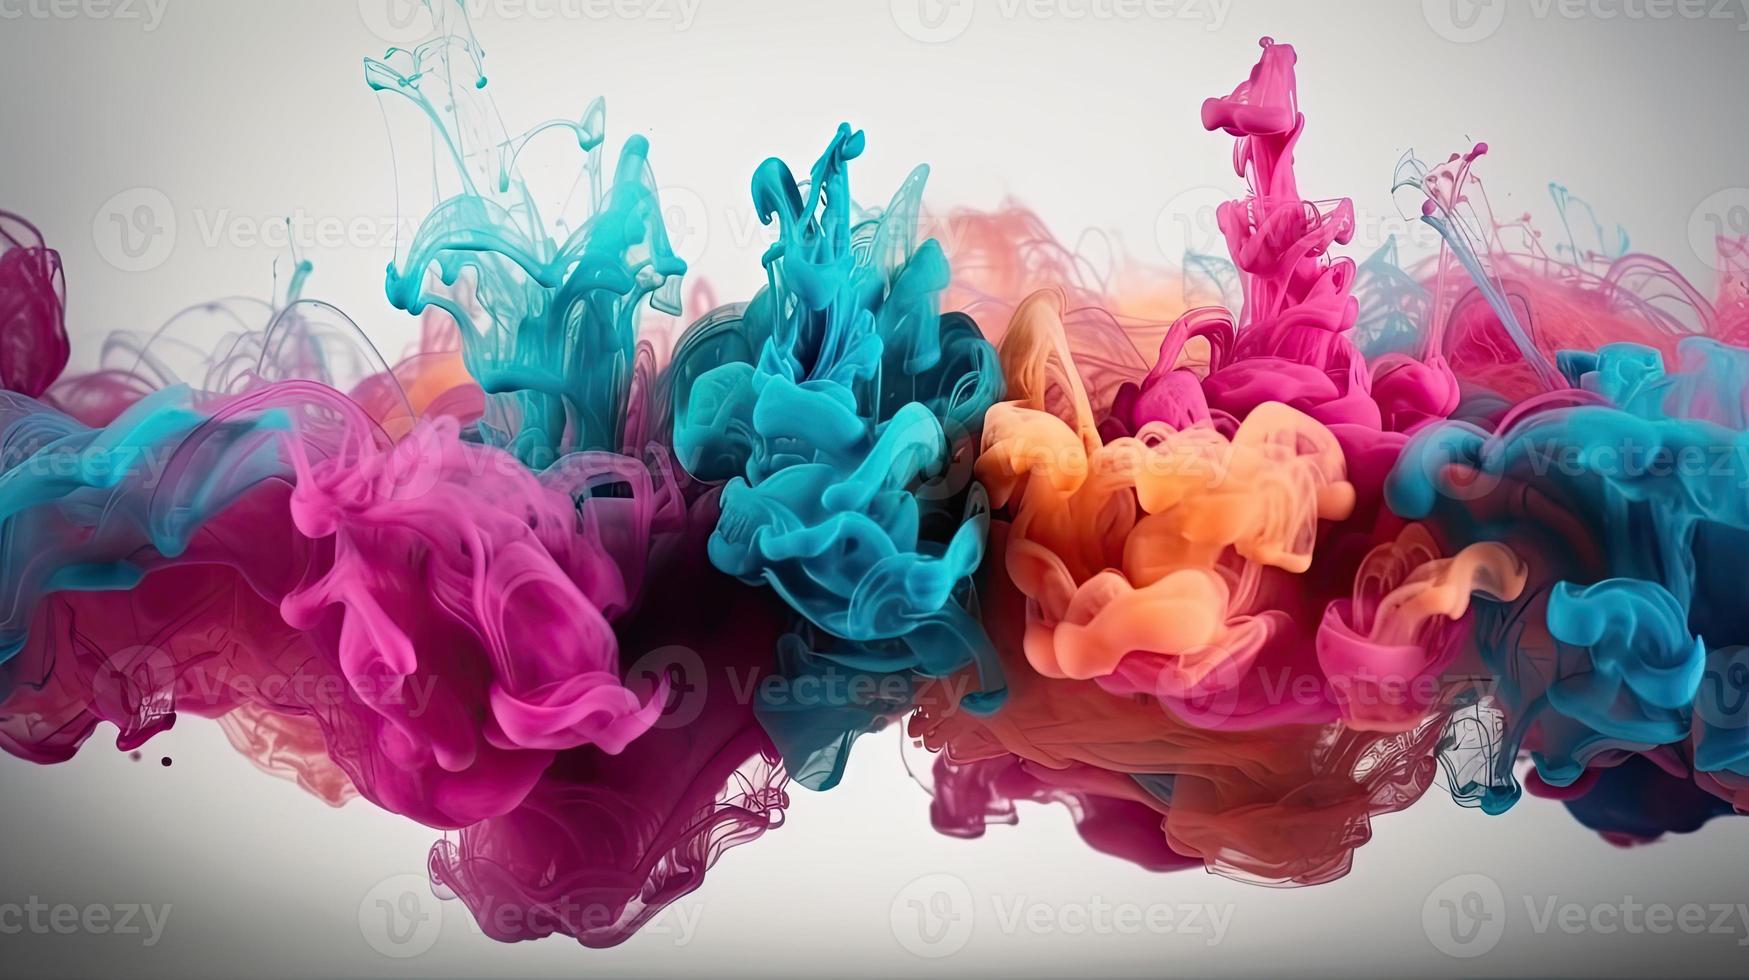 abstract zacht kleurrijk inkt plons in water achtergrond. foto